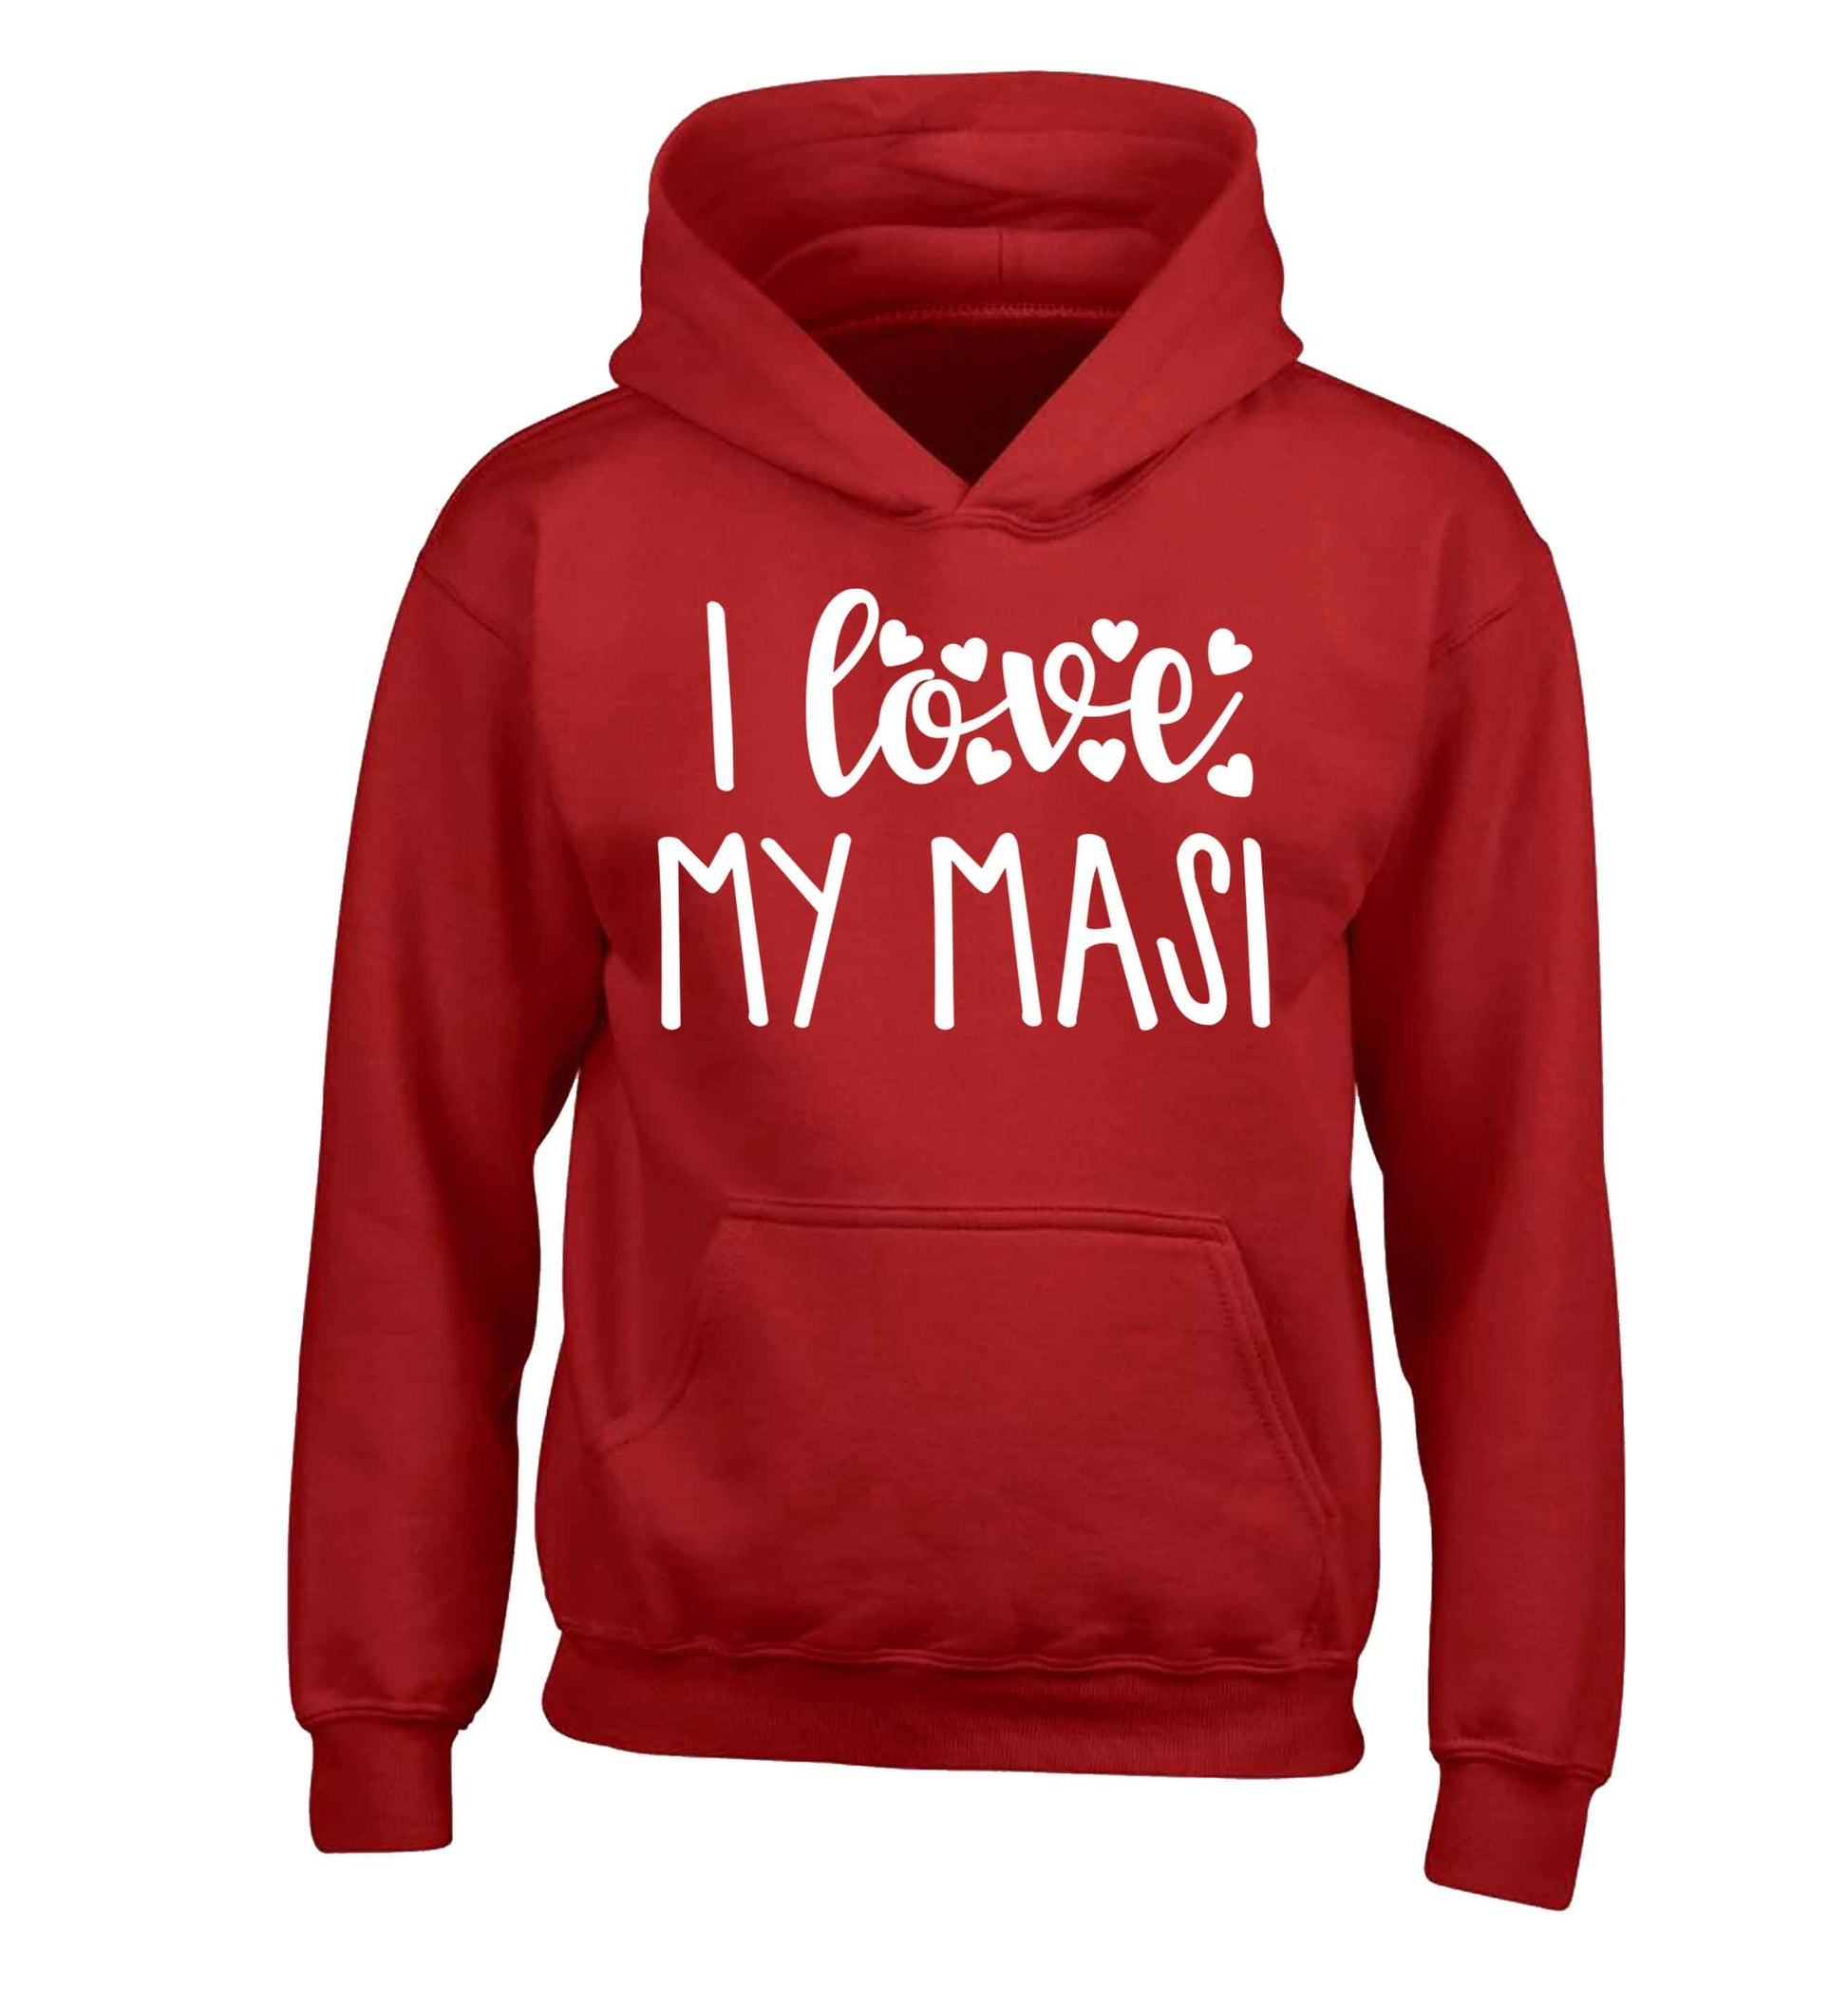 I love my masi children's red hoodie 12-13 Years